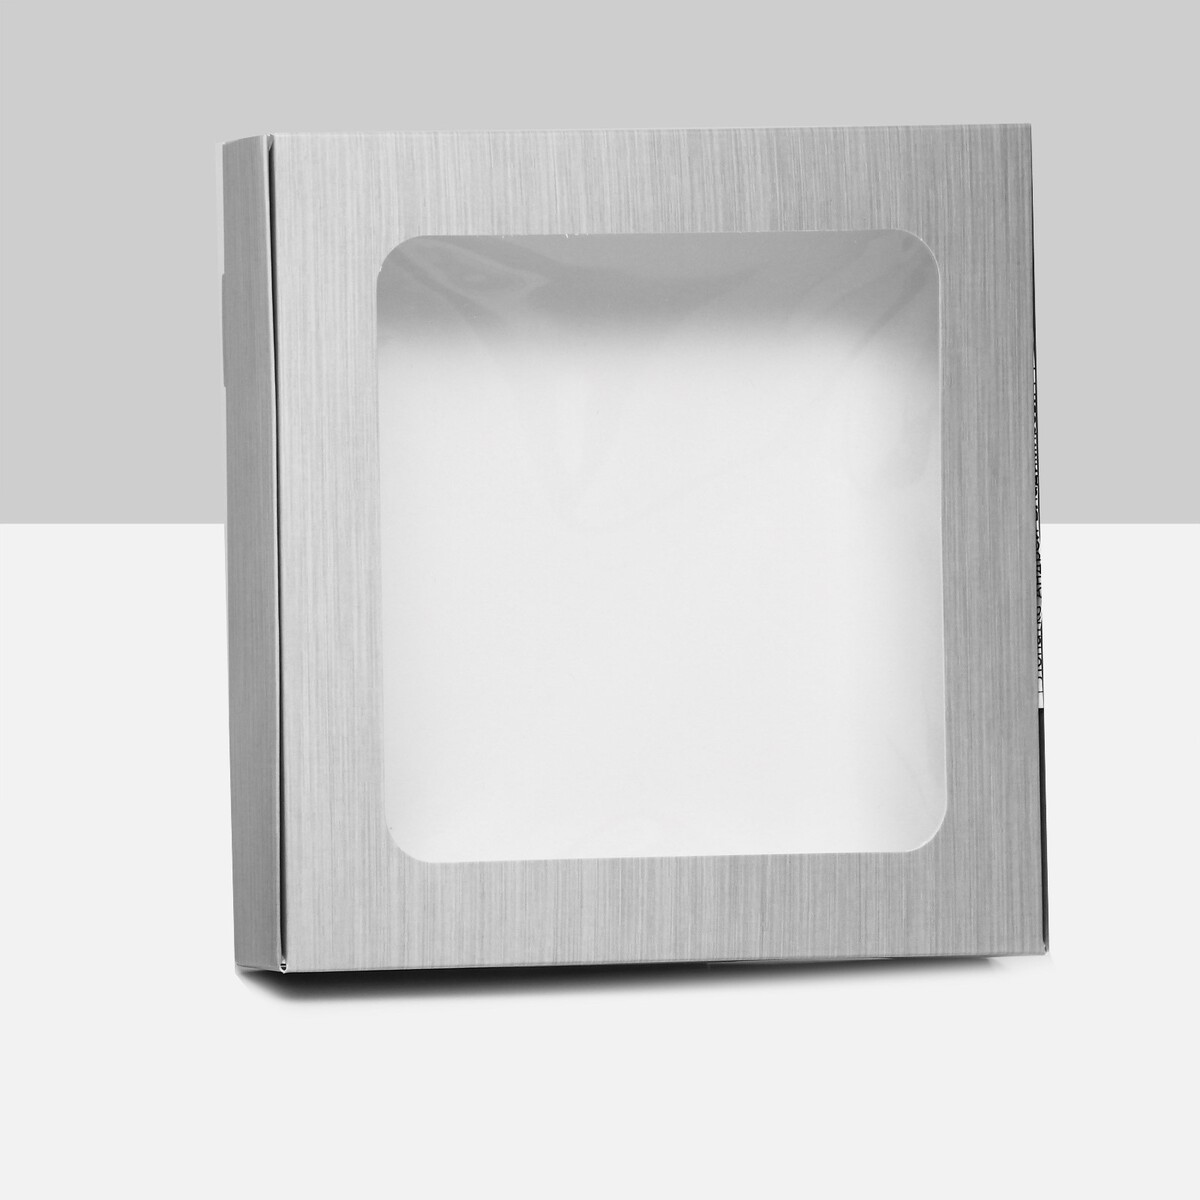 Коробка самосборная, с окном, серебрянная, 16 х 16 х 3 см коробка самосборная с окном золотая 16 х 16 х 3 см